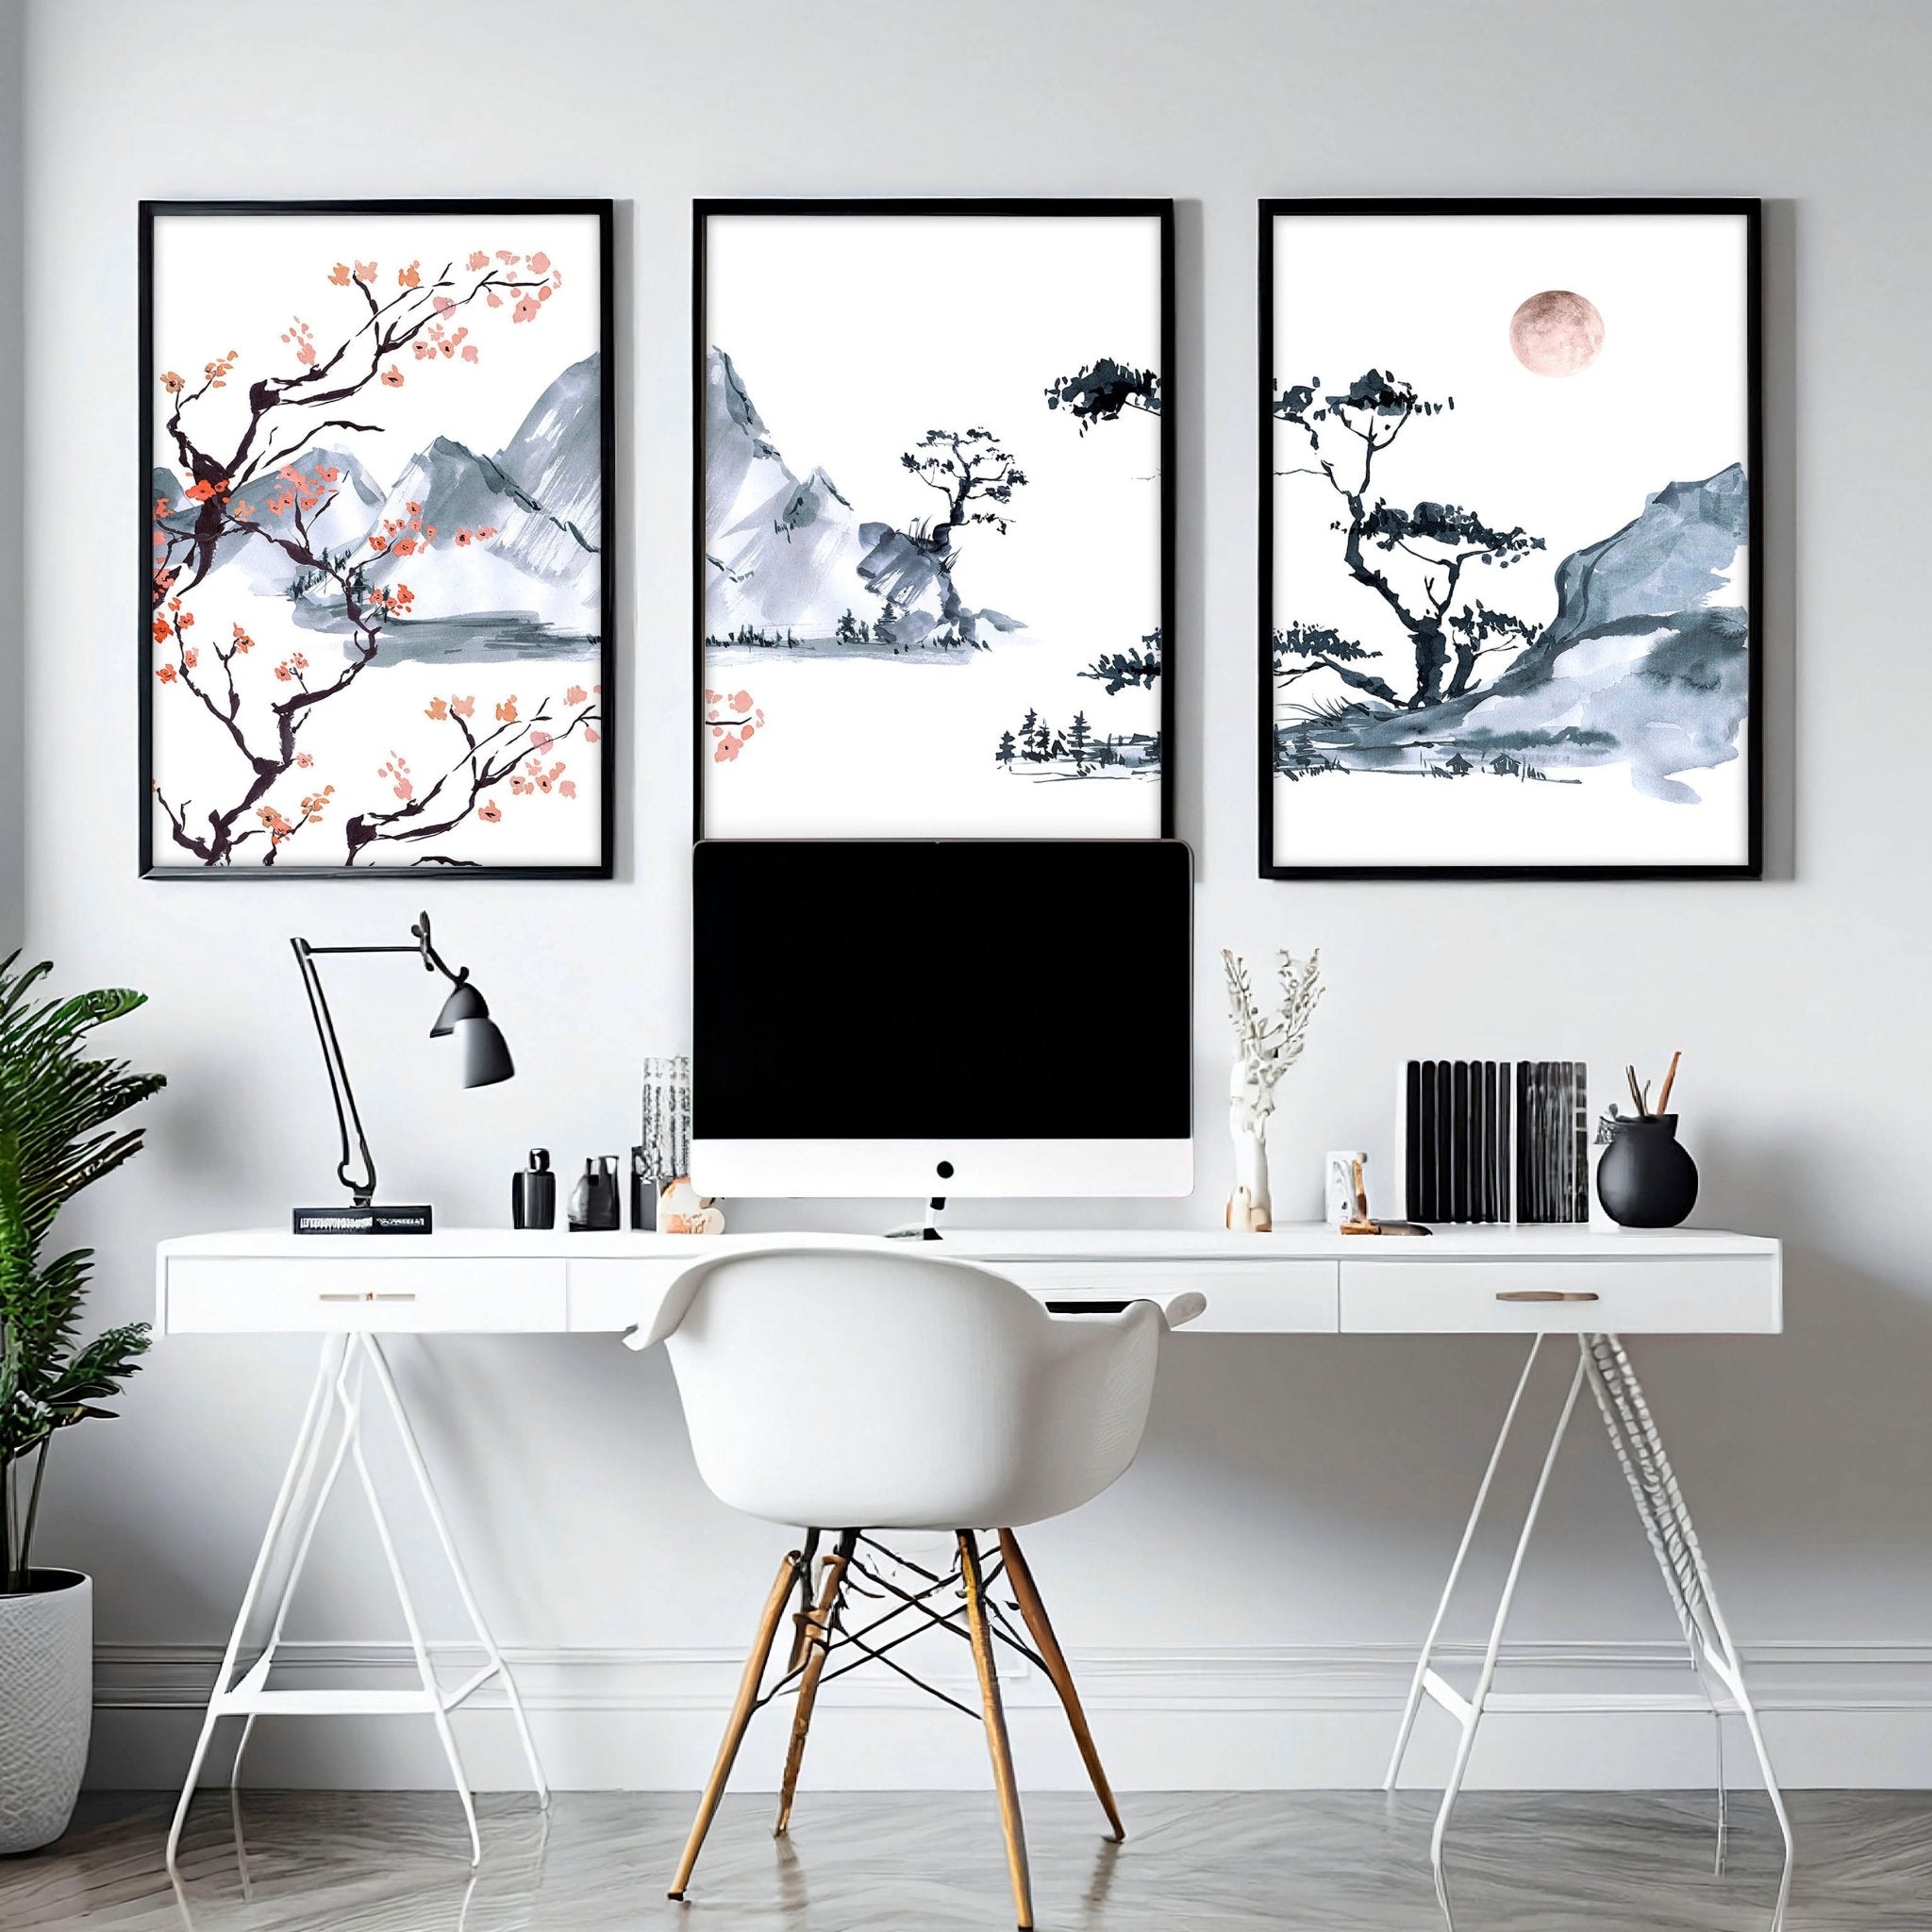 Japonés Zen Home Office Decor para hombres conjunto de 3 impresiones de arte de pared enmarcadas, Trendy Japandi galería arte de pared colgante conjunto para decoración de escritorio de oficina